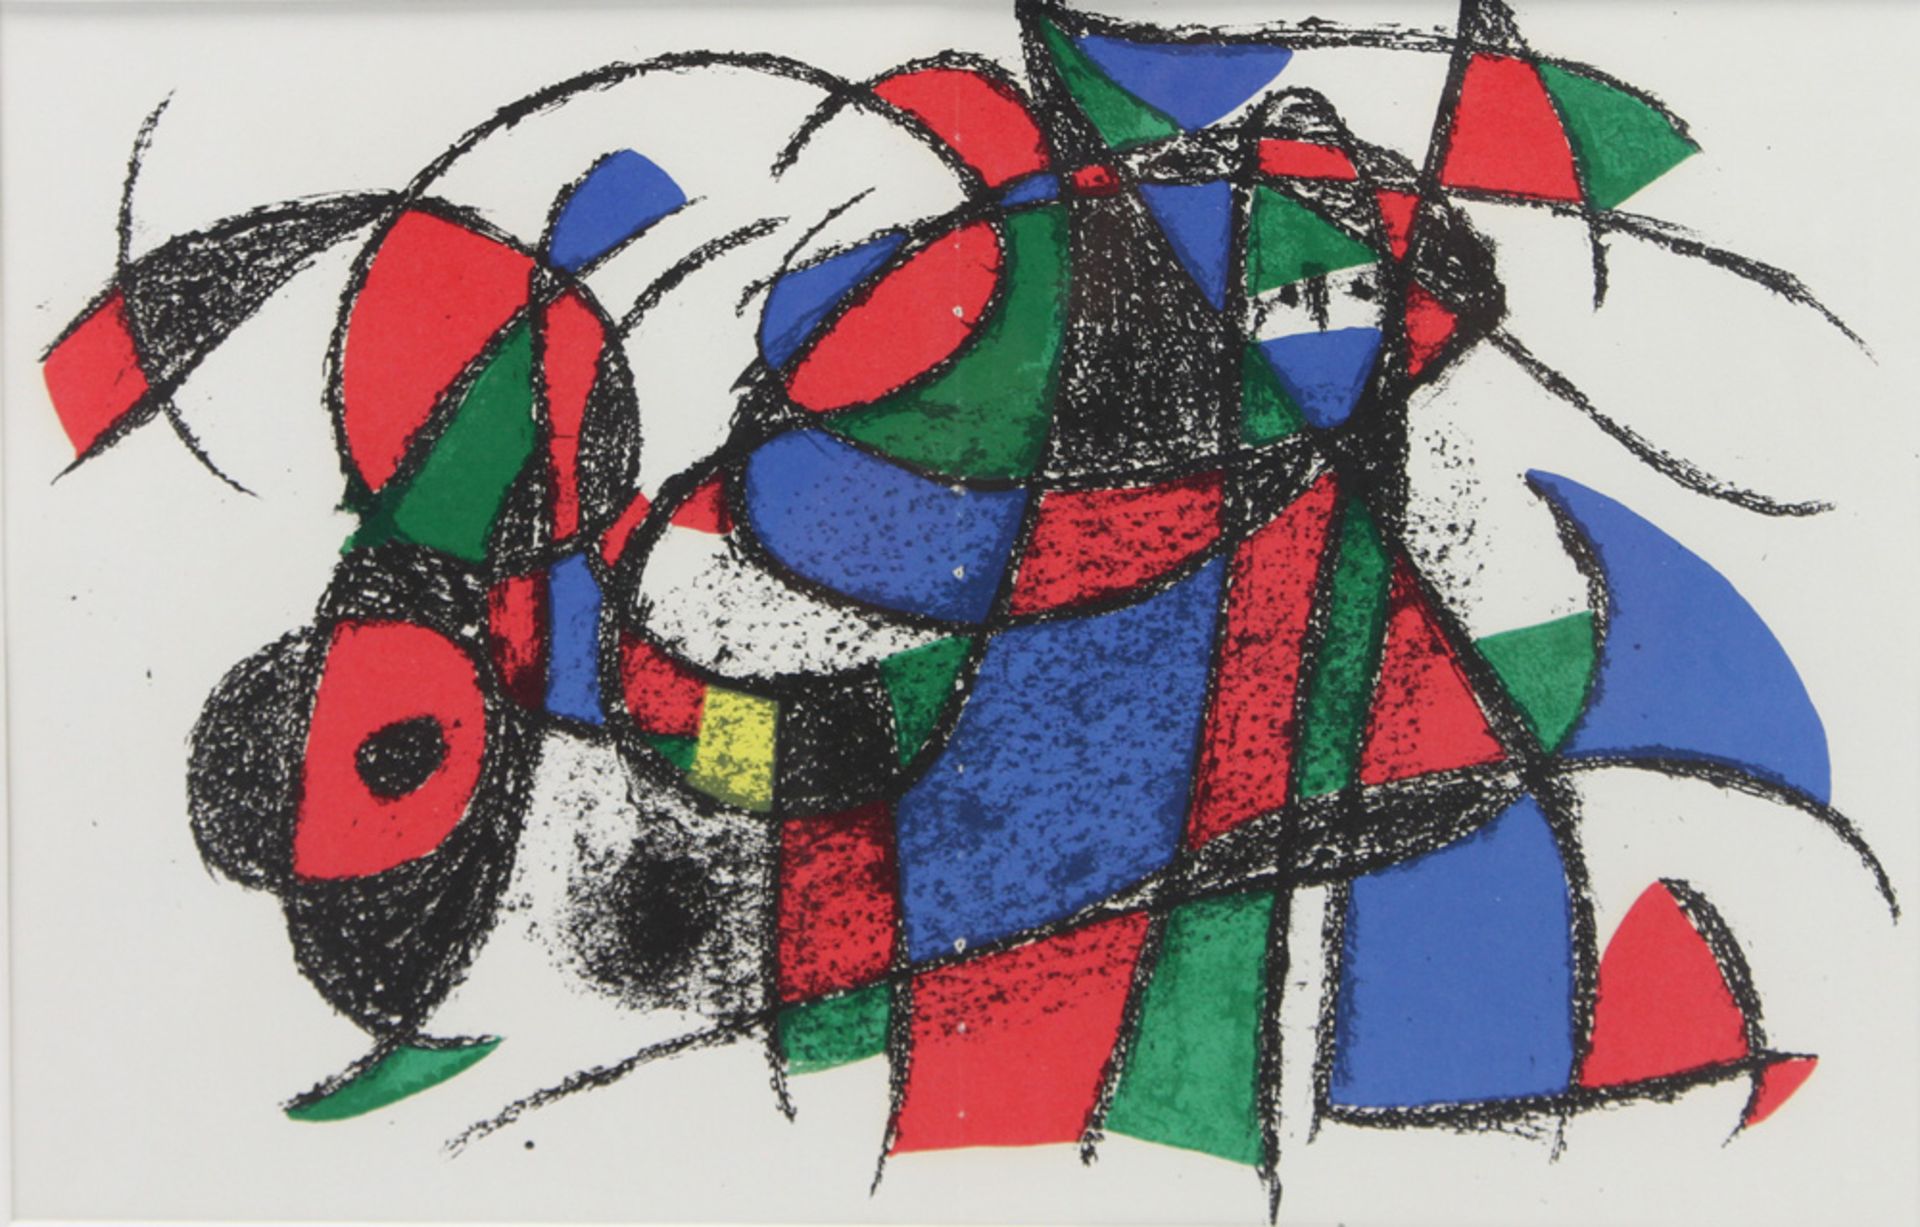 MIRÒ, JOAN (1893-1983), NACH: Grafik aus: "Mirò der Lithograph II", 1975. 1 Bl. Lithografie (